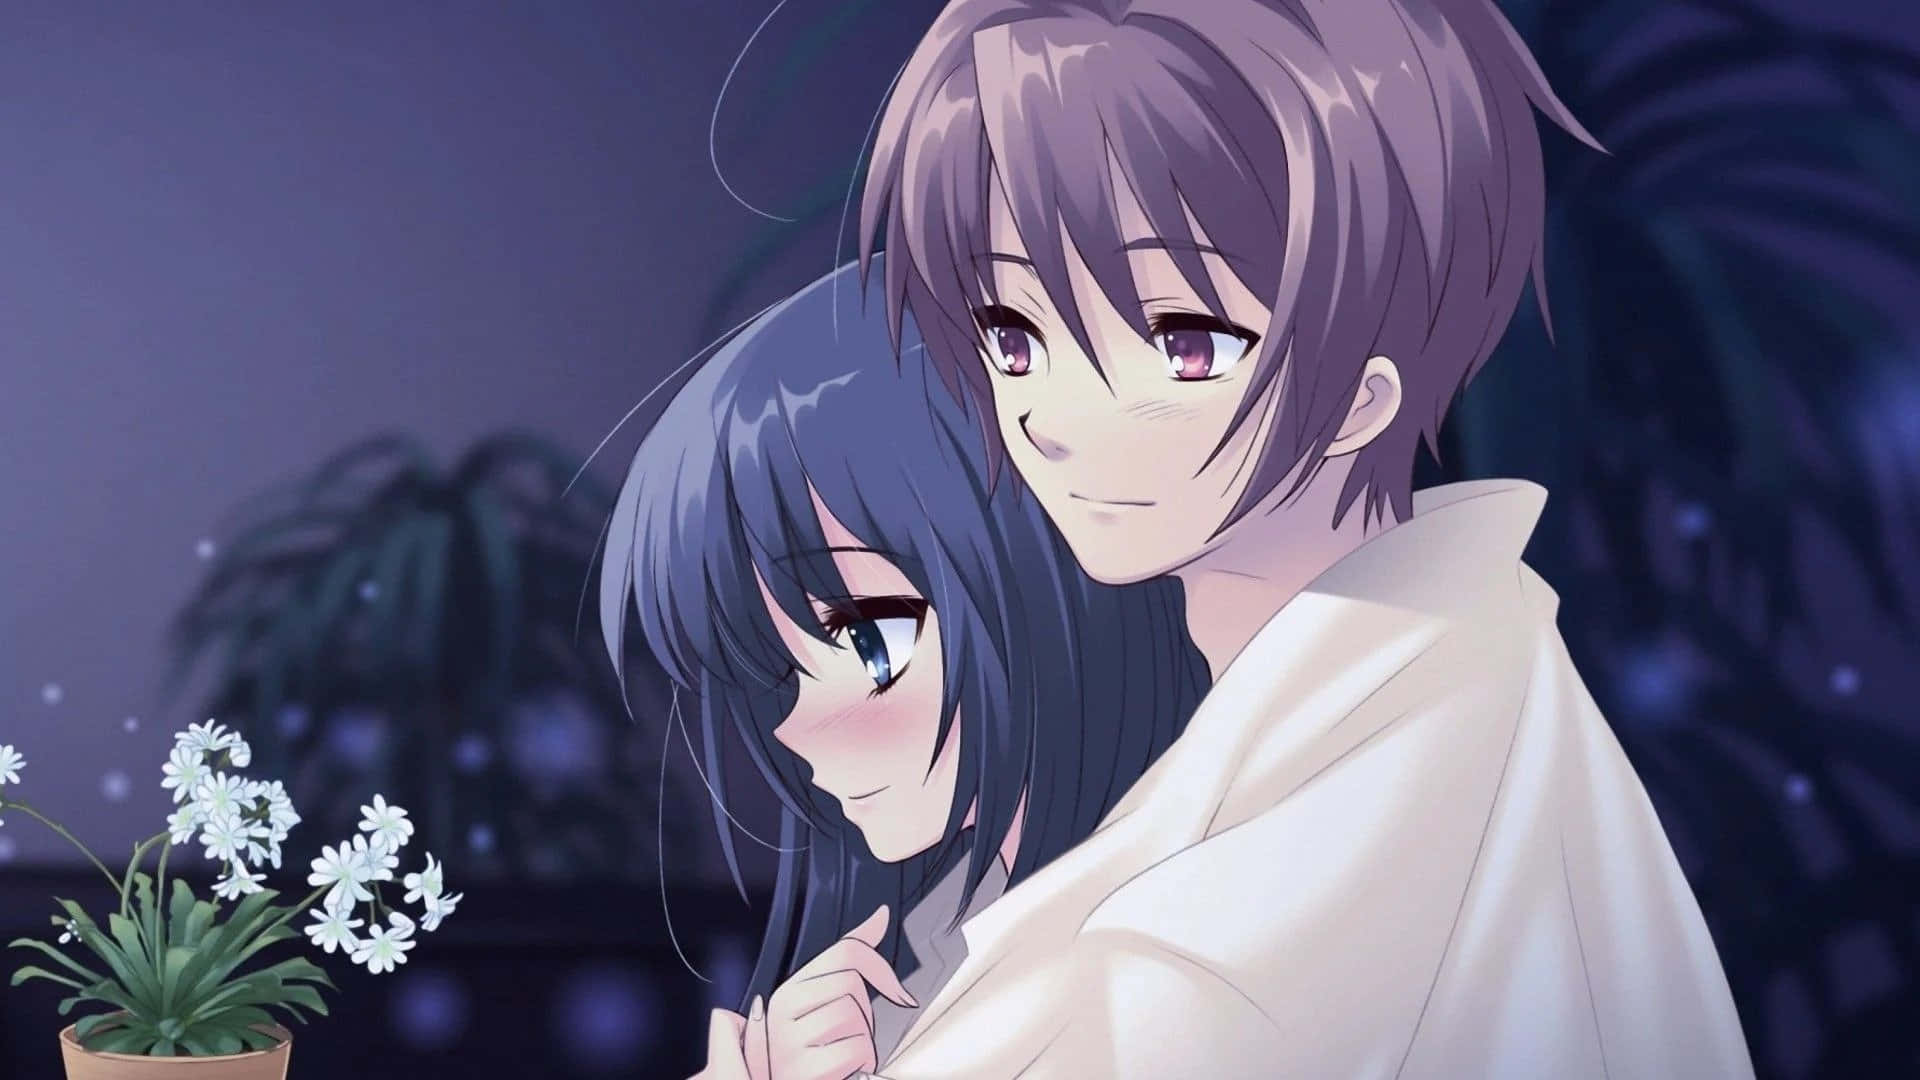 Enromantisk Omfamning Mellan Två Anime-älskare.